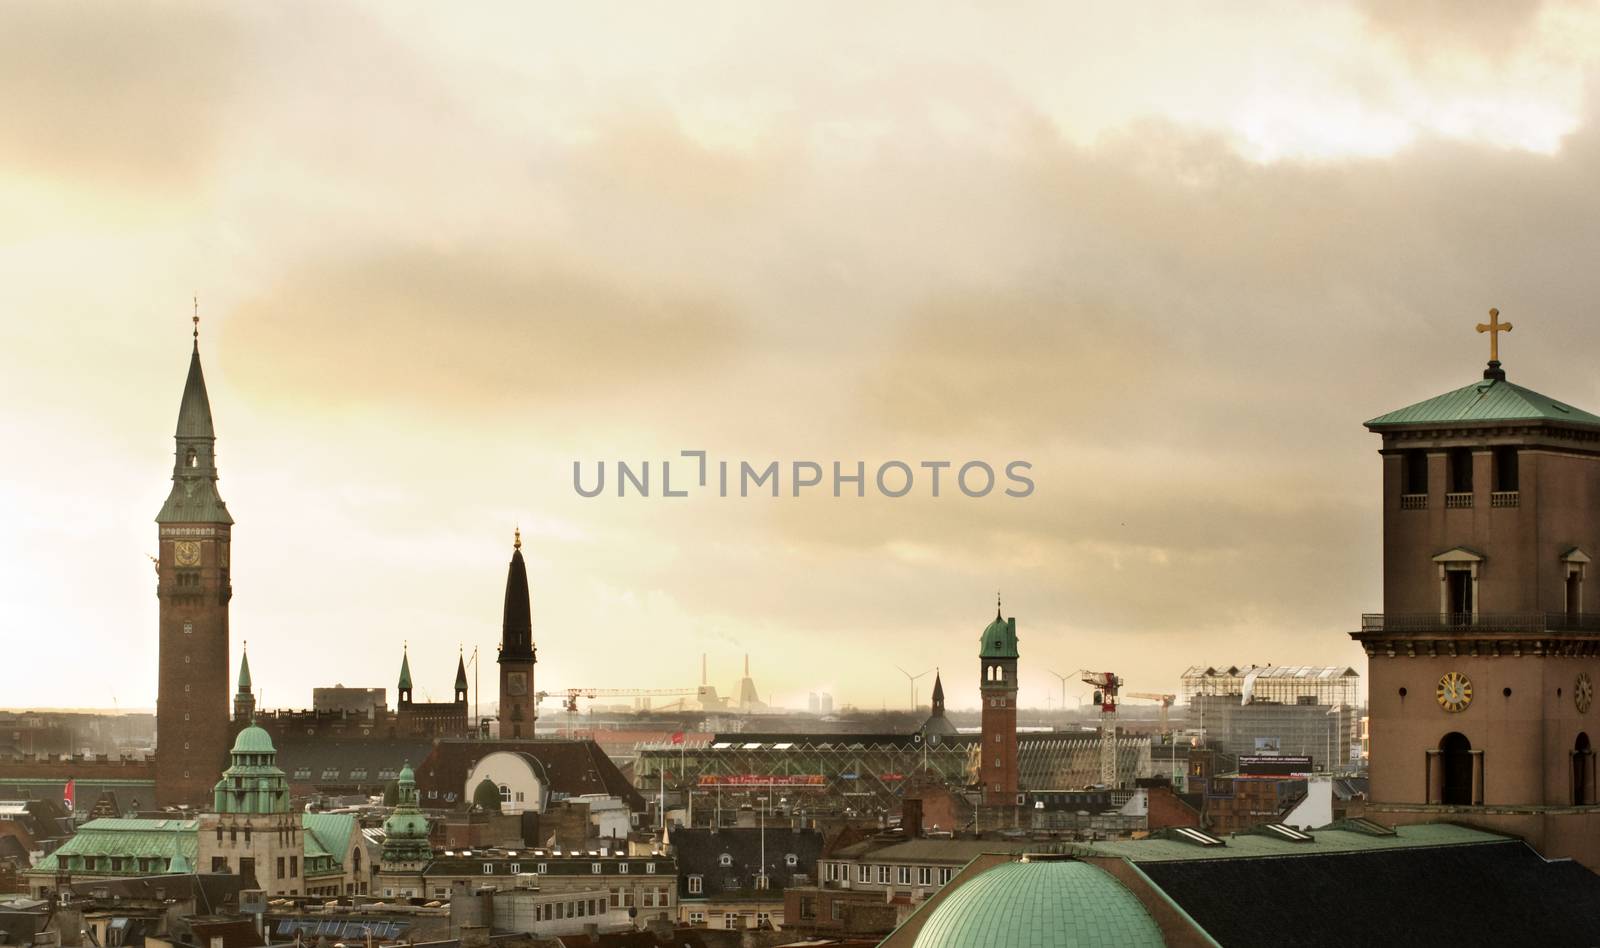 Copenhagen Roofs by zhekos